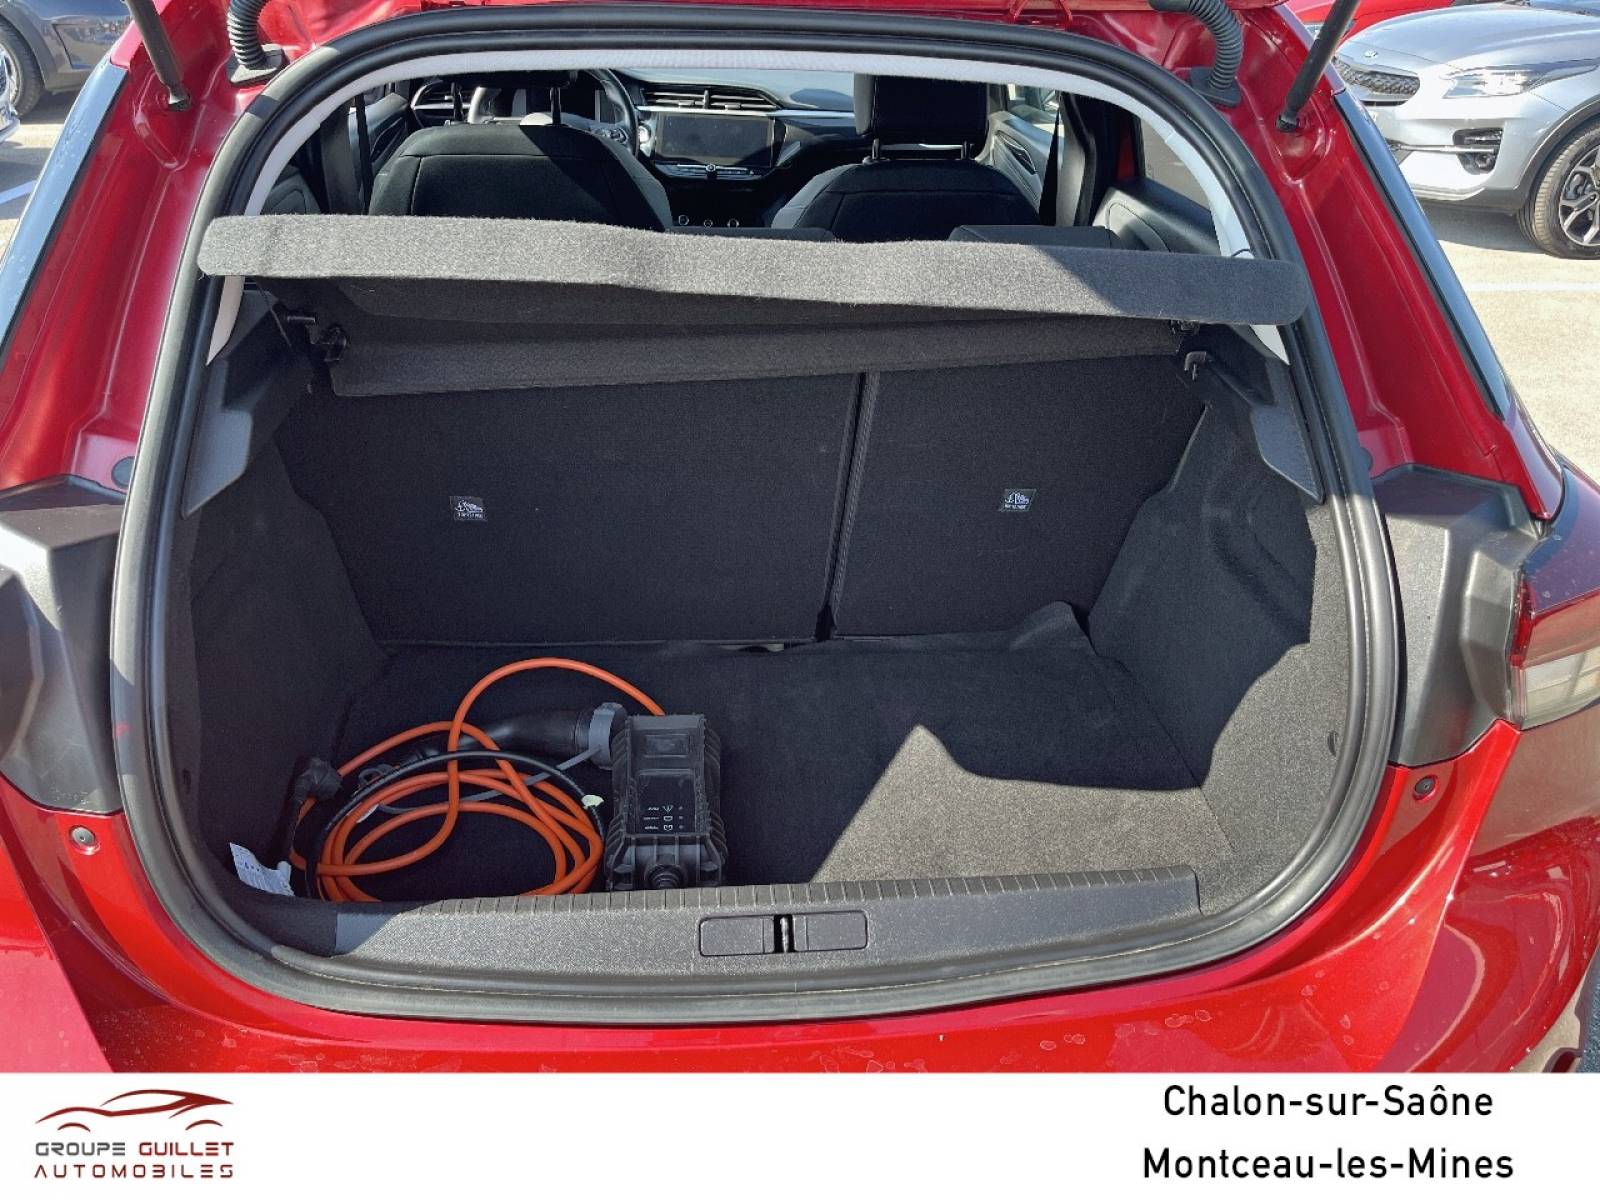 OPEL Corsa Electrique 136 ch & Batterie 50 kw/h - véhicule d'occasion - Groupe Guillet - Opel Magicauto Chalon - 71380 - Saint-Marcel - 6